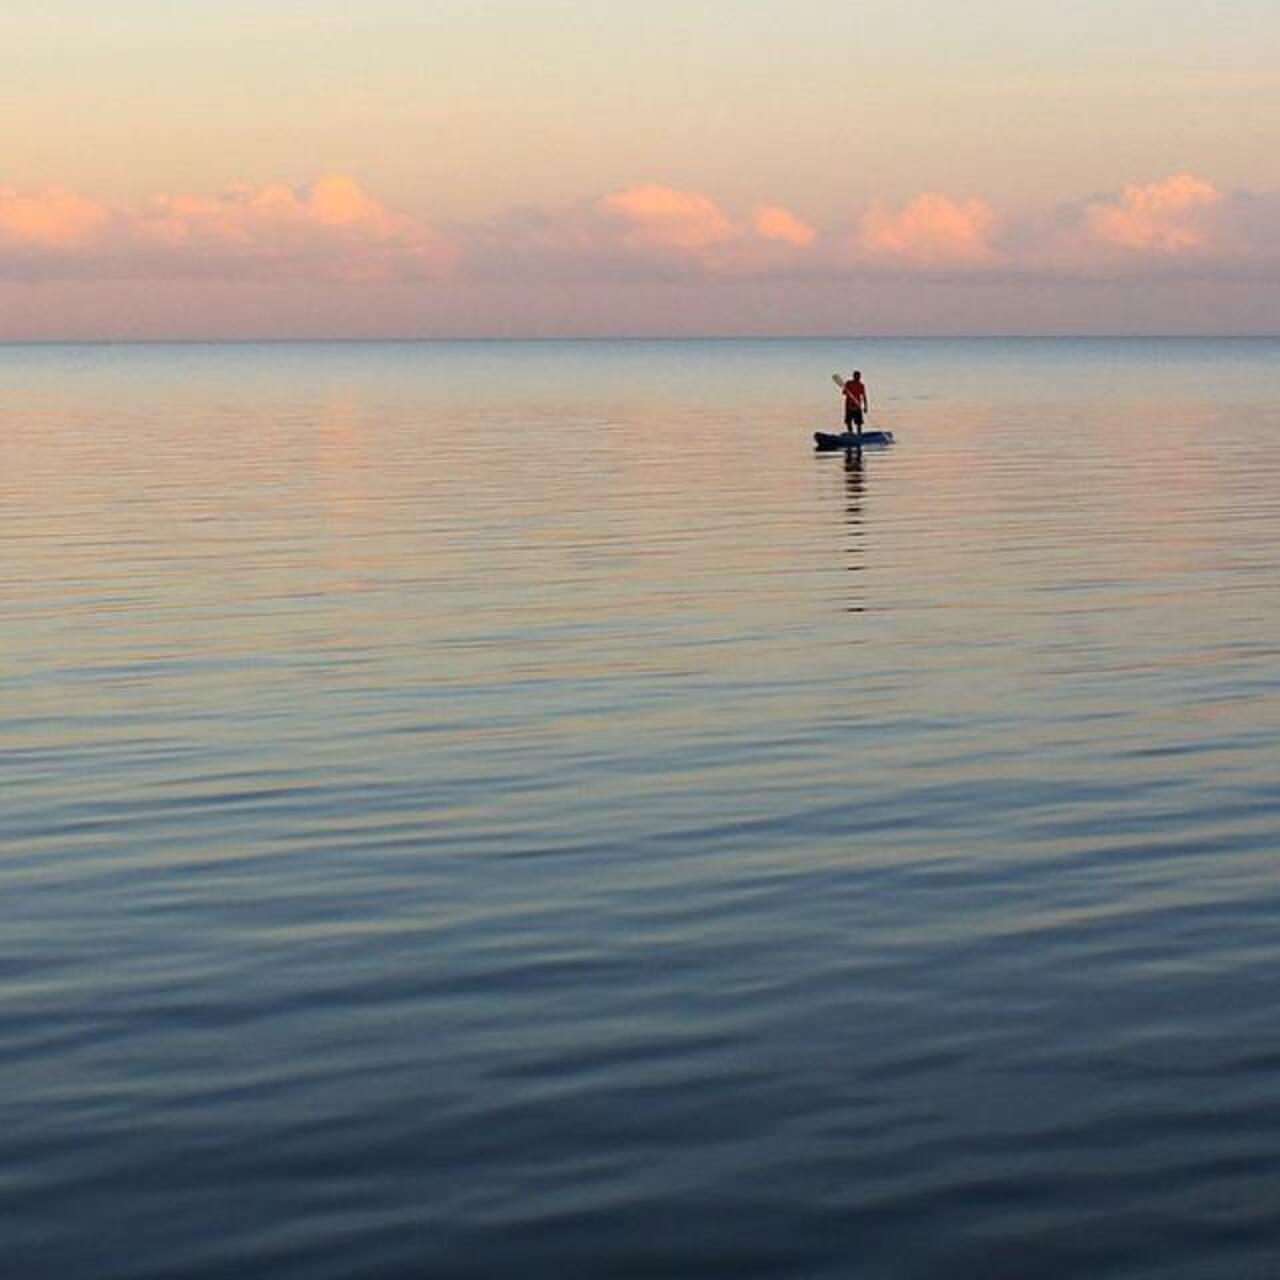 Uno mismo #soledad #paisaje #mar #sea #landscape #bahía de #Chetumal #QuintanaRoo #México #photo #gallery #art #p... http://t.co/HIapRR1duJ